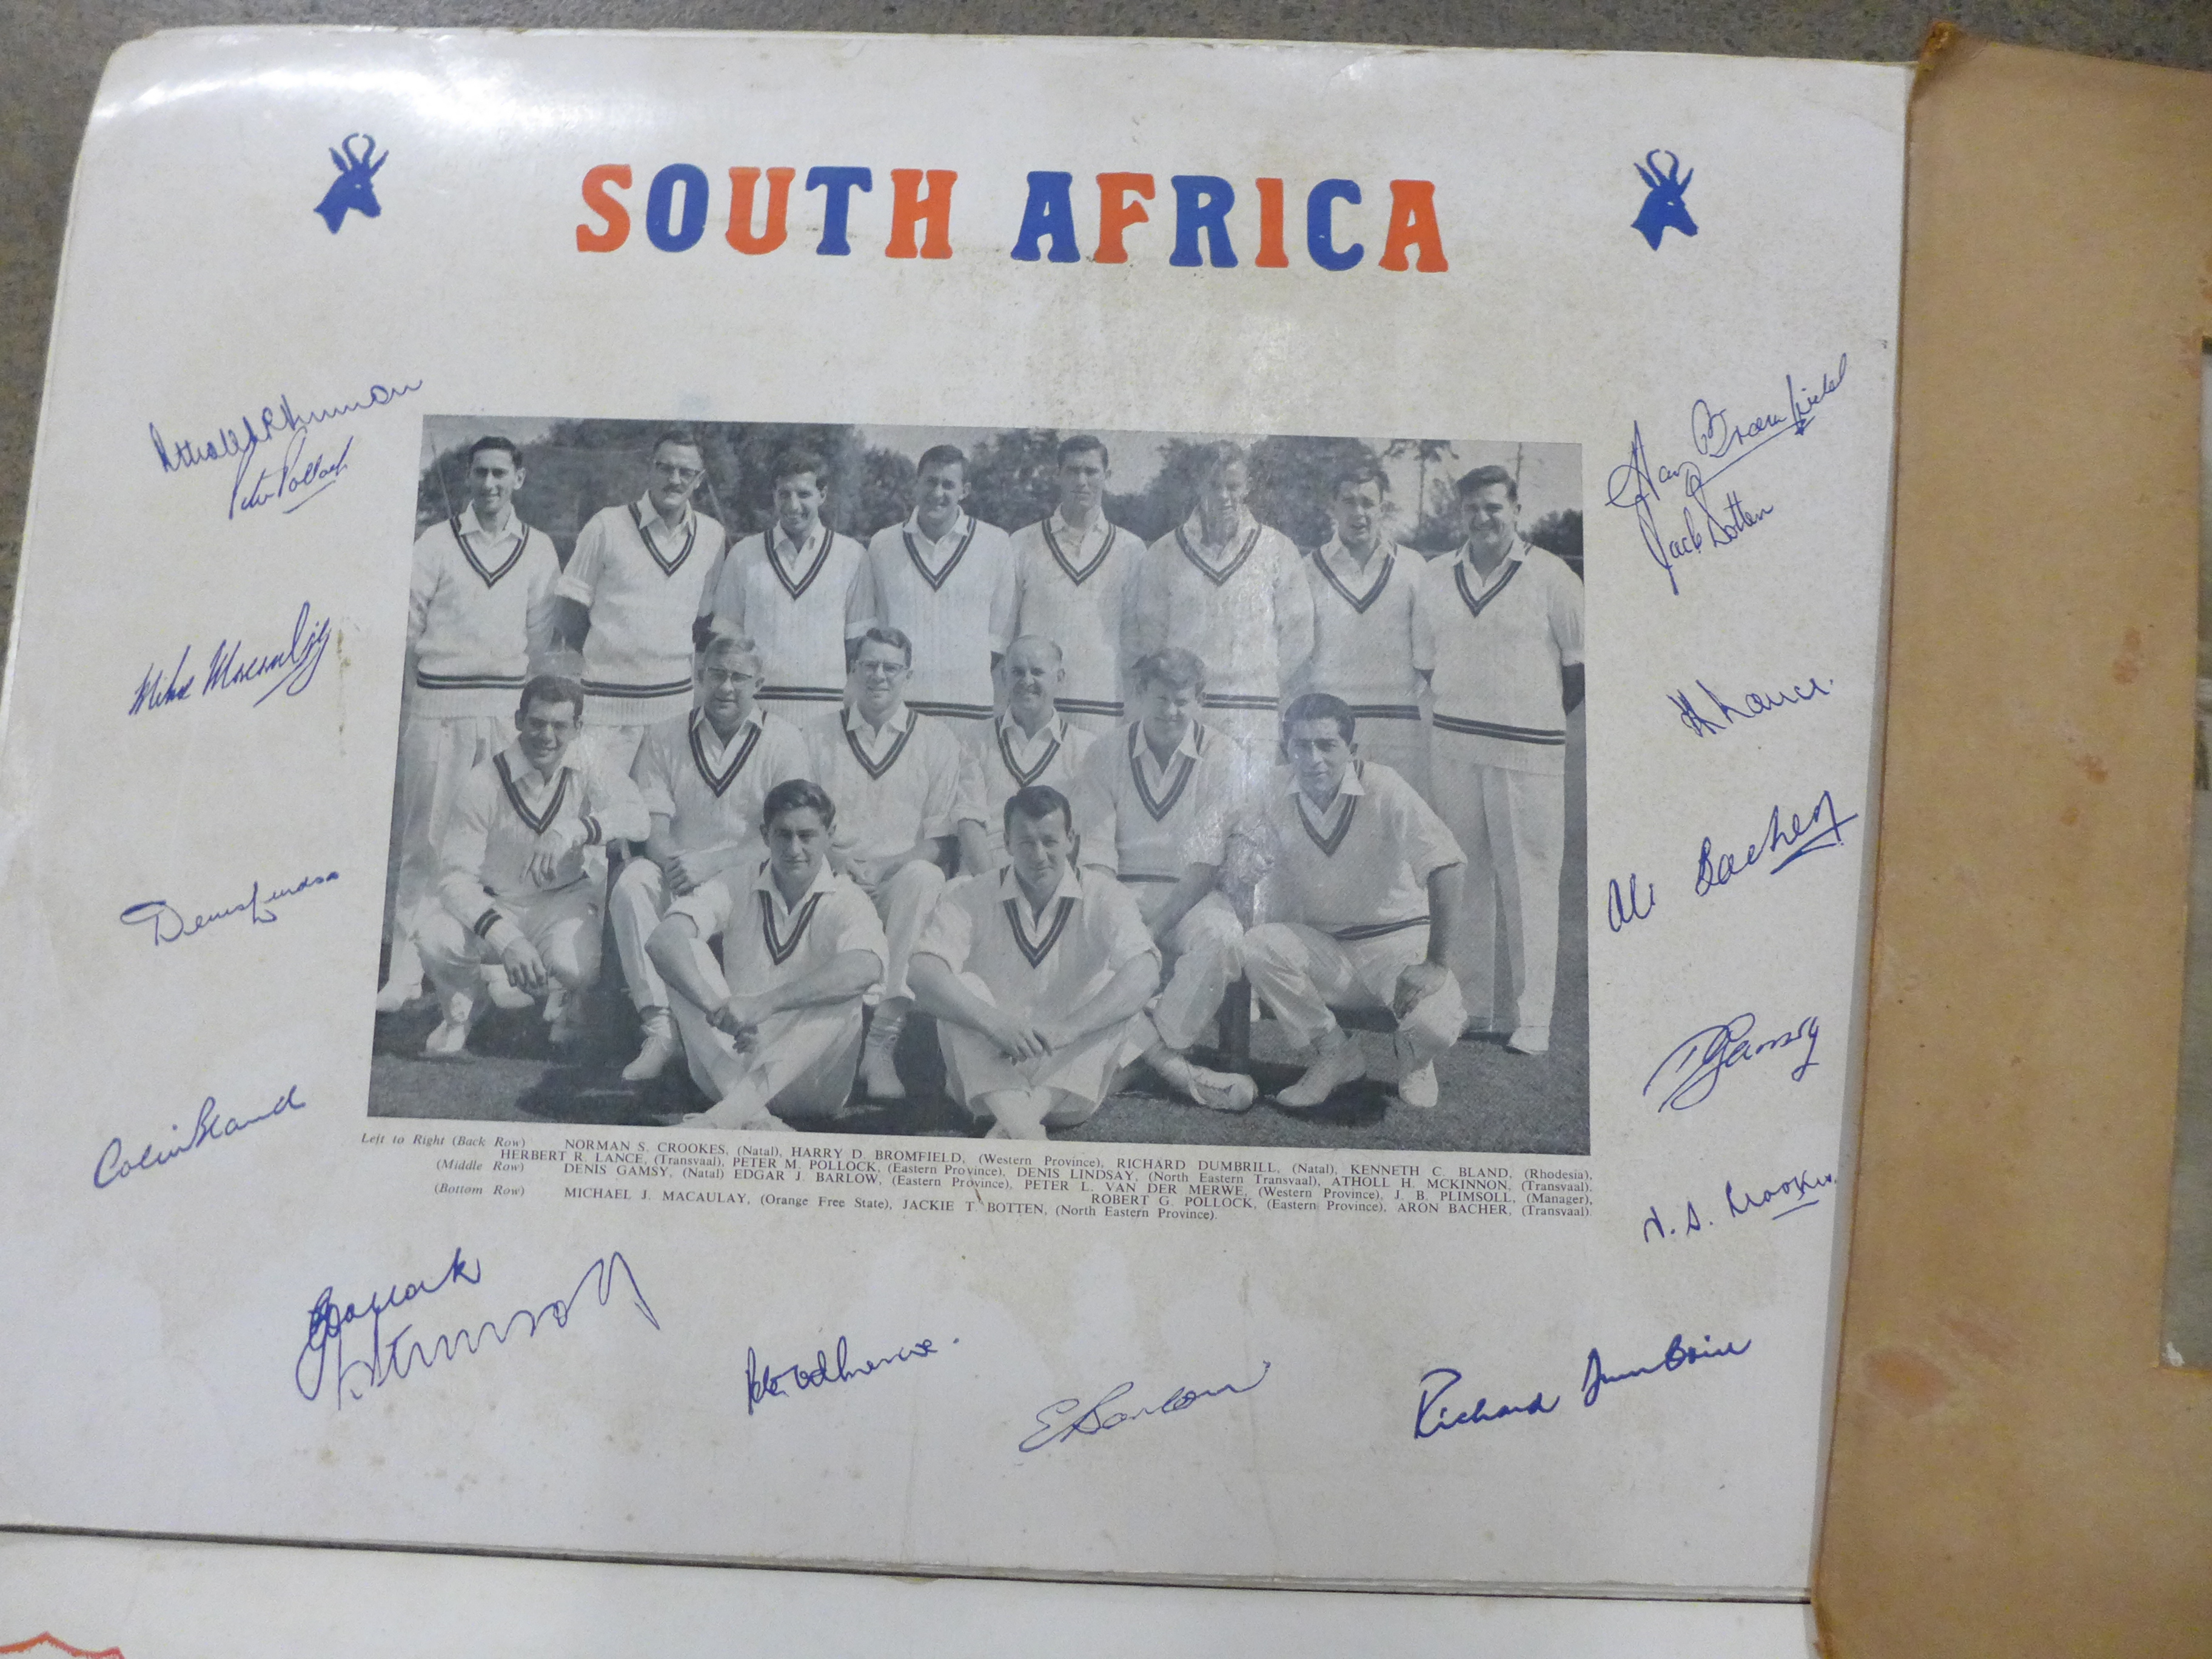 Cricket ephemera and scrap albums with autographs including Larwood, Boycott, Subba Row - Image 18 of 19